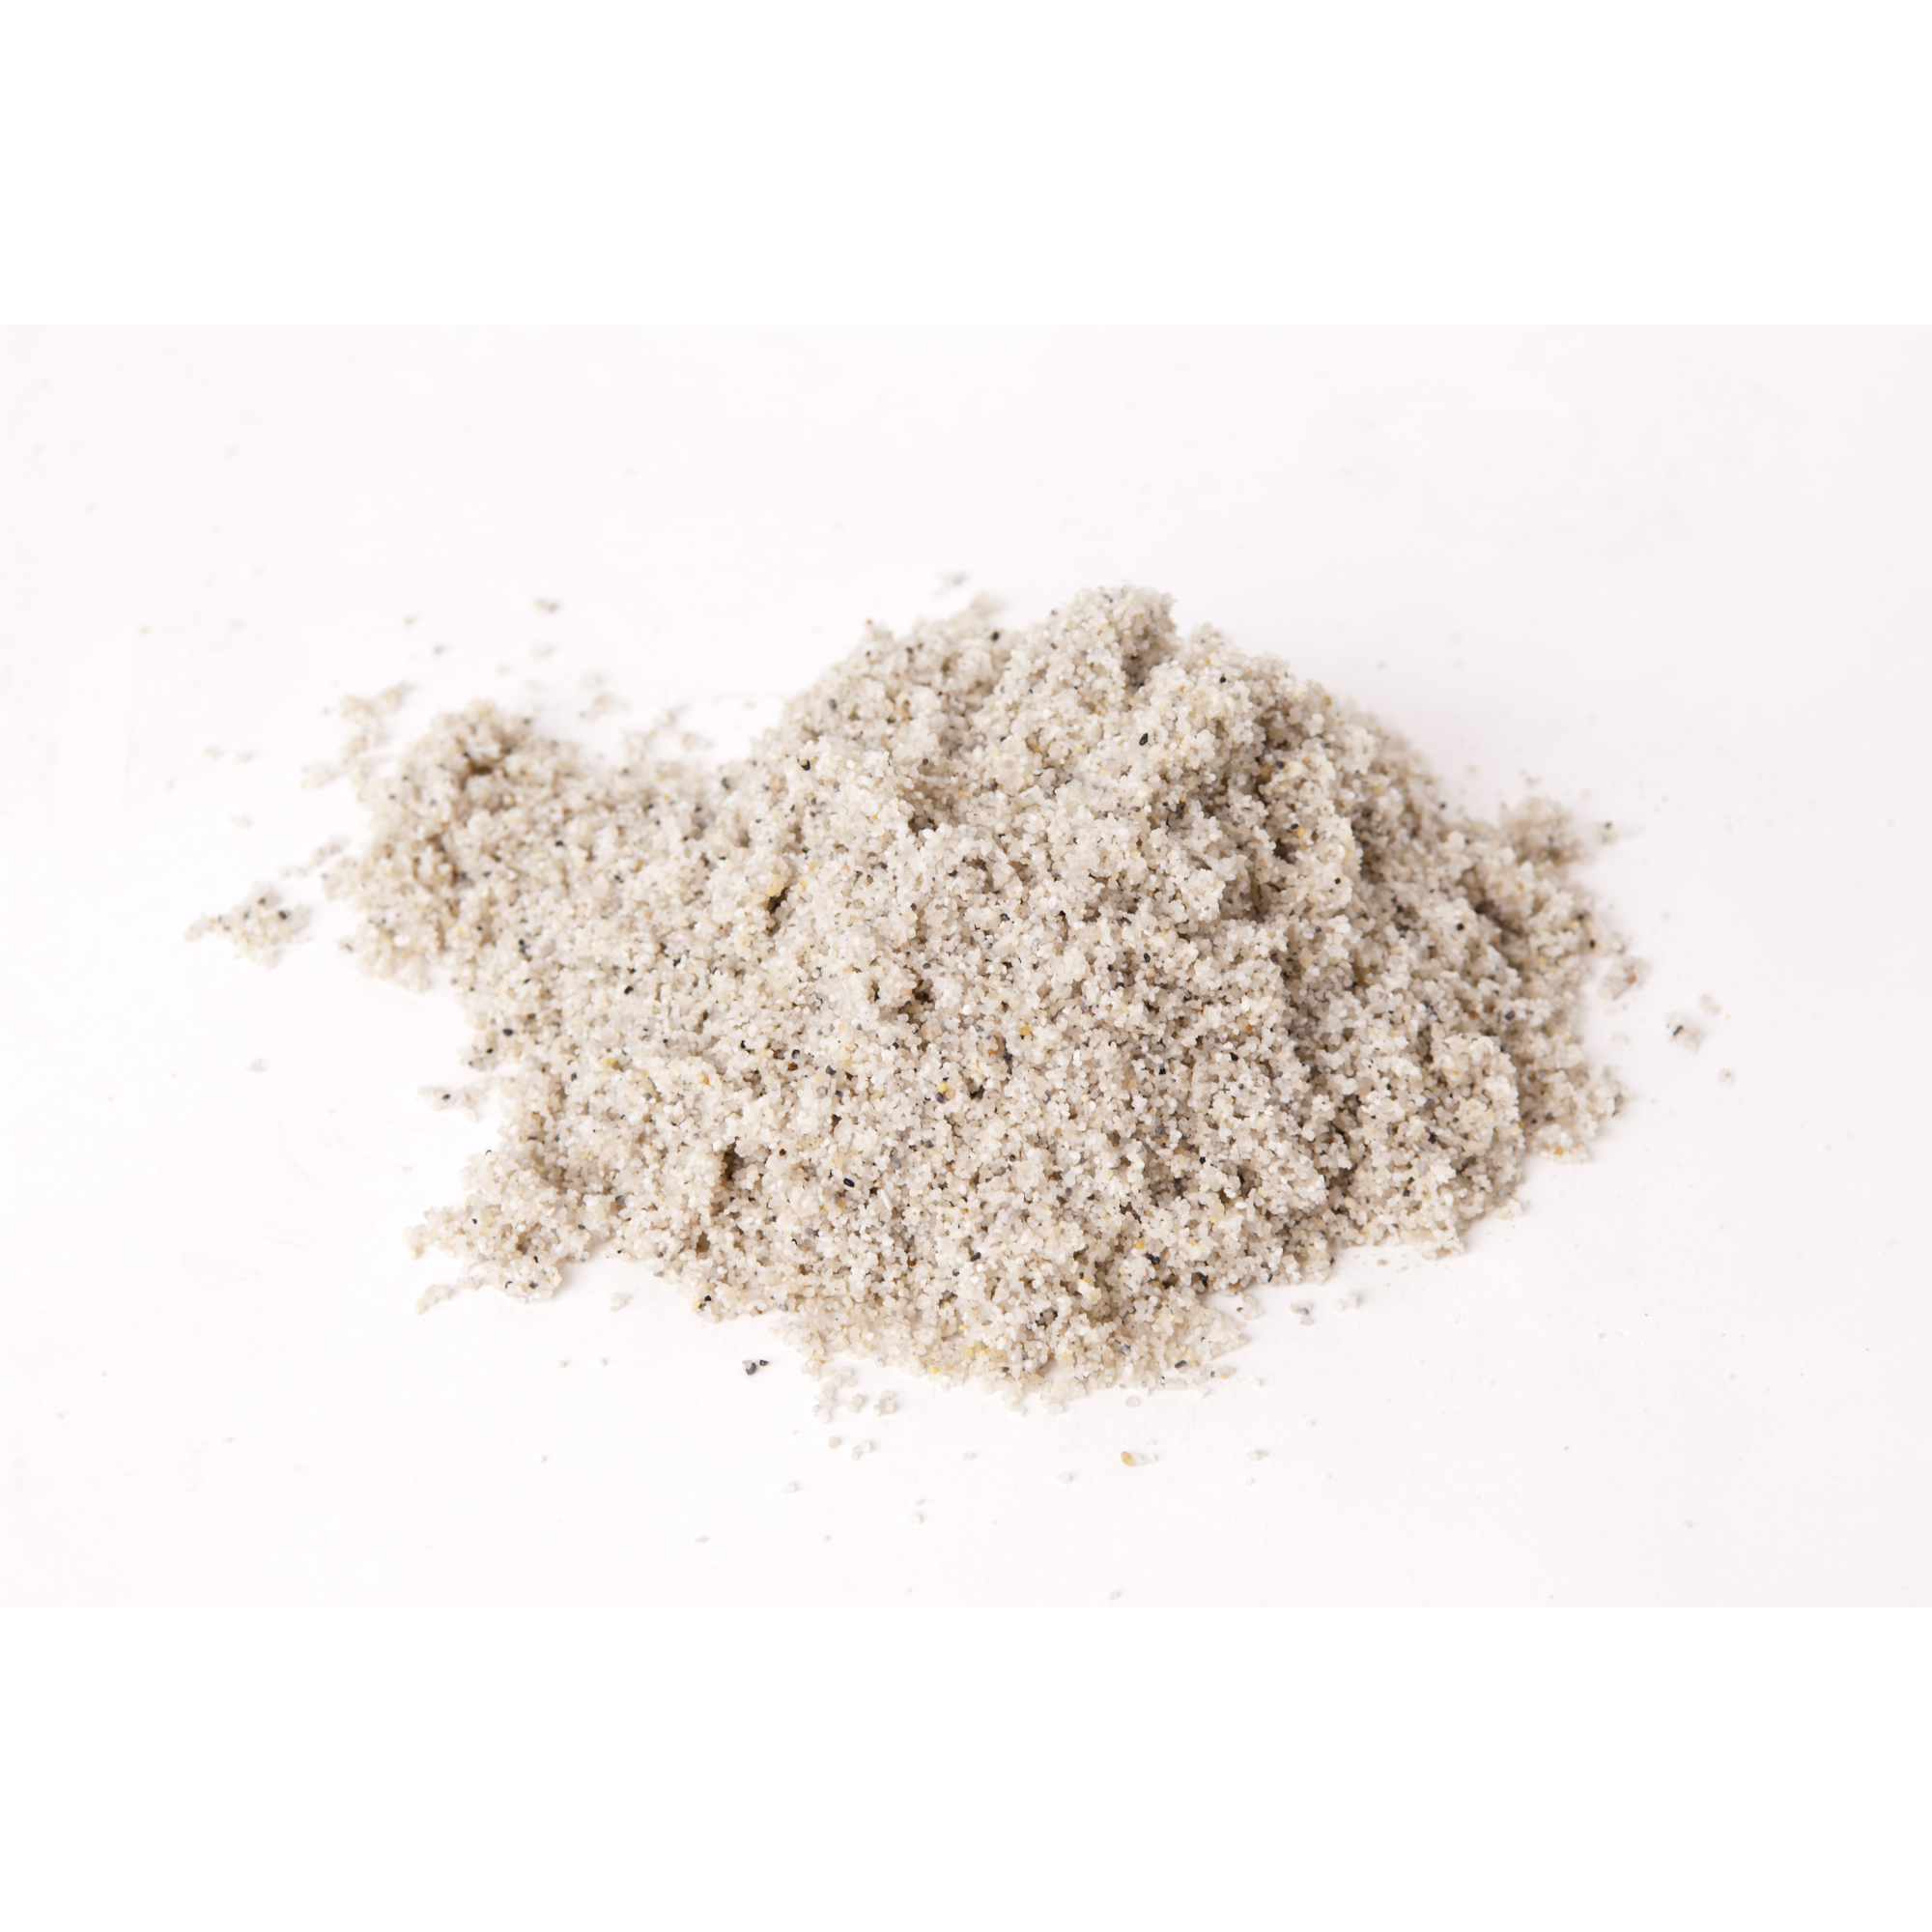 Filtersand für Sandfilteranlagen extra fein 0,4-0,8 mm 25 kg + product picture